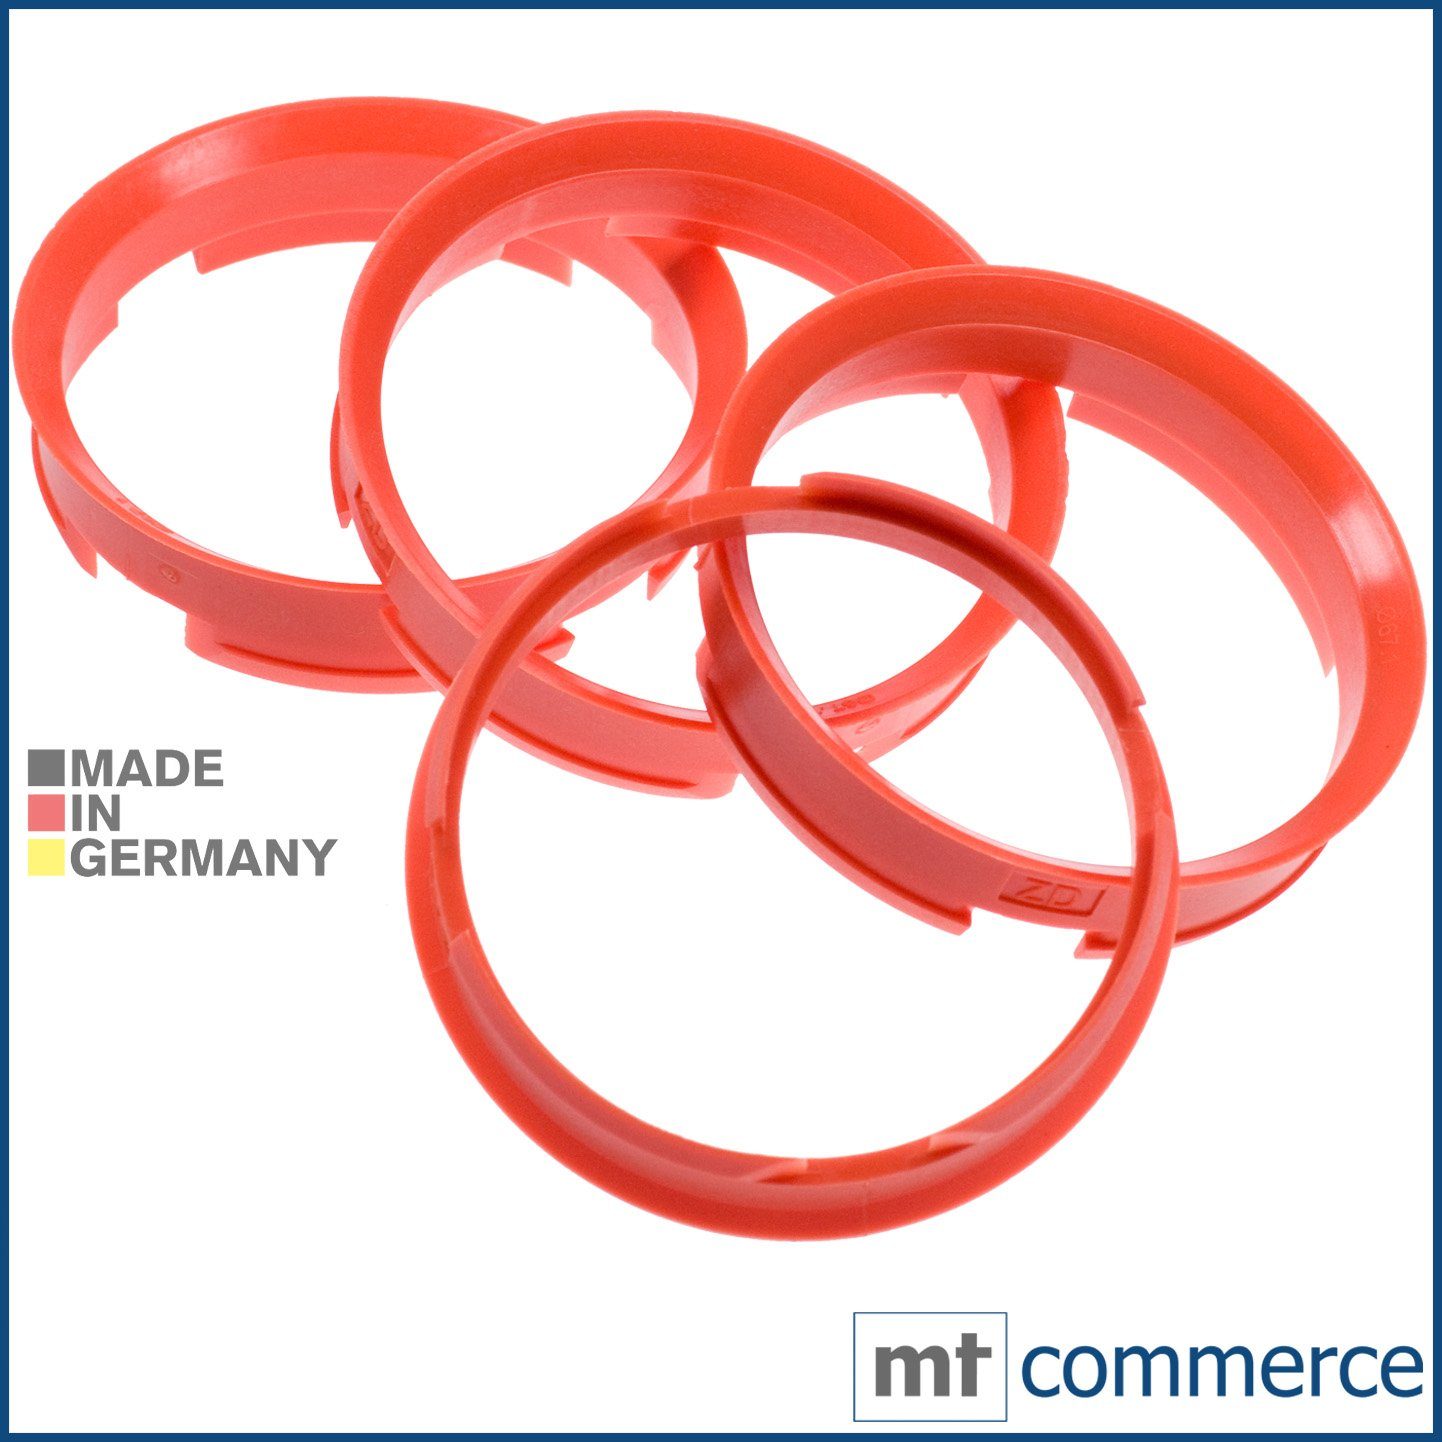 RKC Reifenstift 4X Zentrierringe orange Felgen Ringe Made in Germany, Maße: 72,6 x 67,1 mm